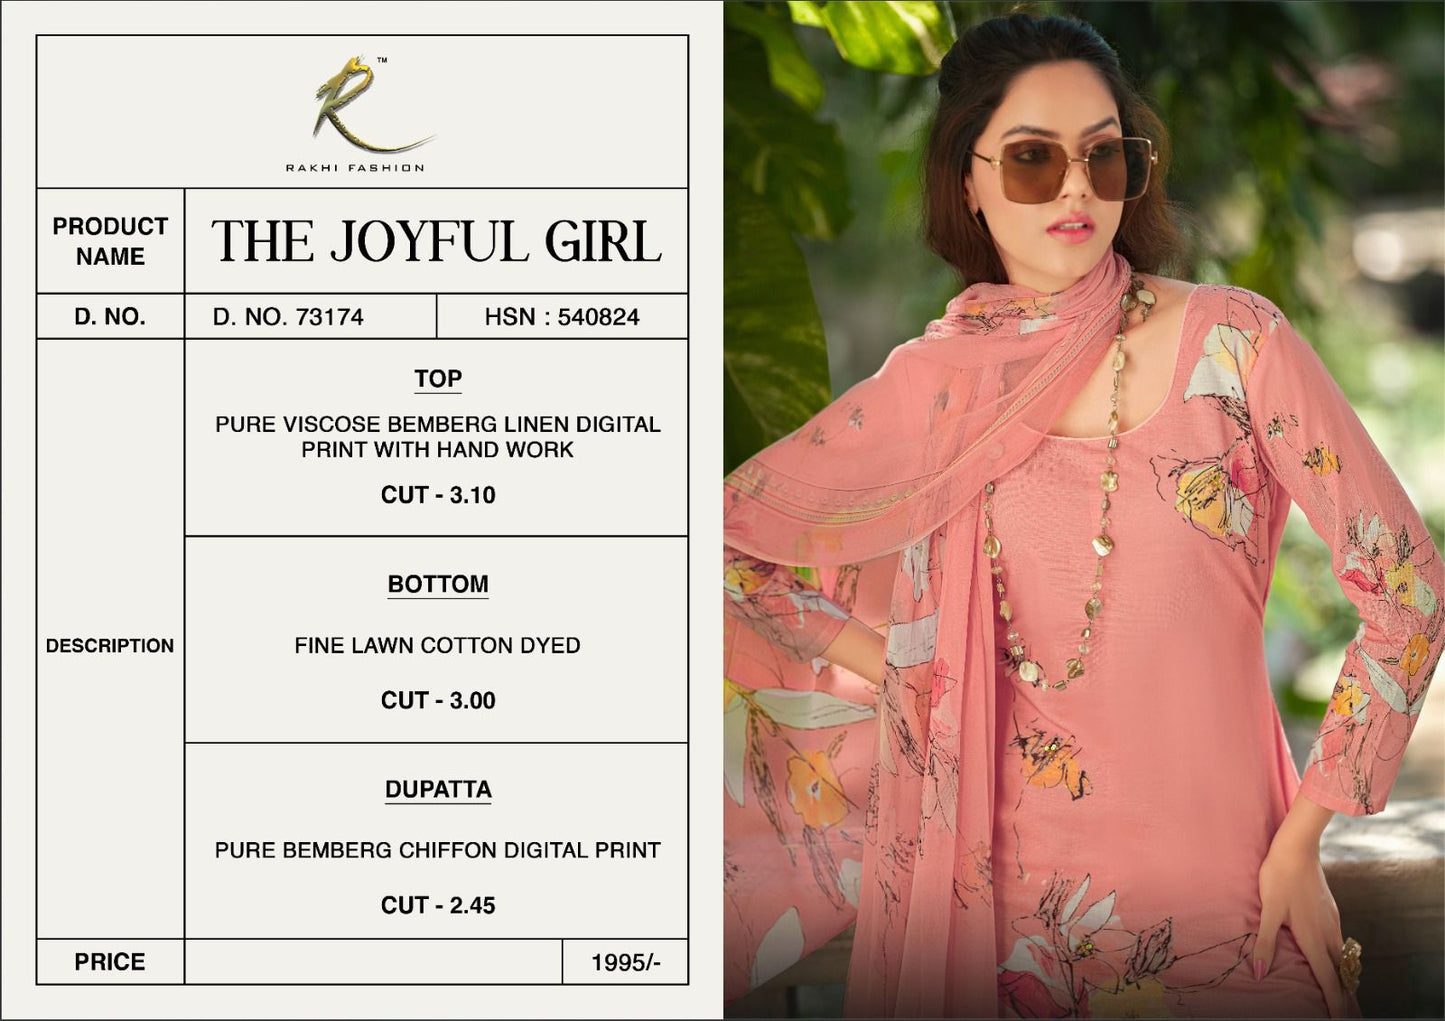 The Joyful Girl Rakhi Fashion Pure Viscose Pant Style Suits